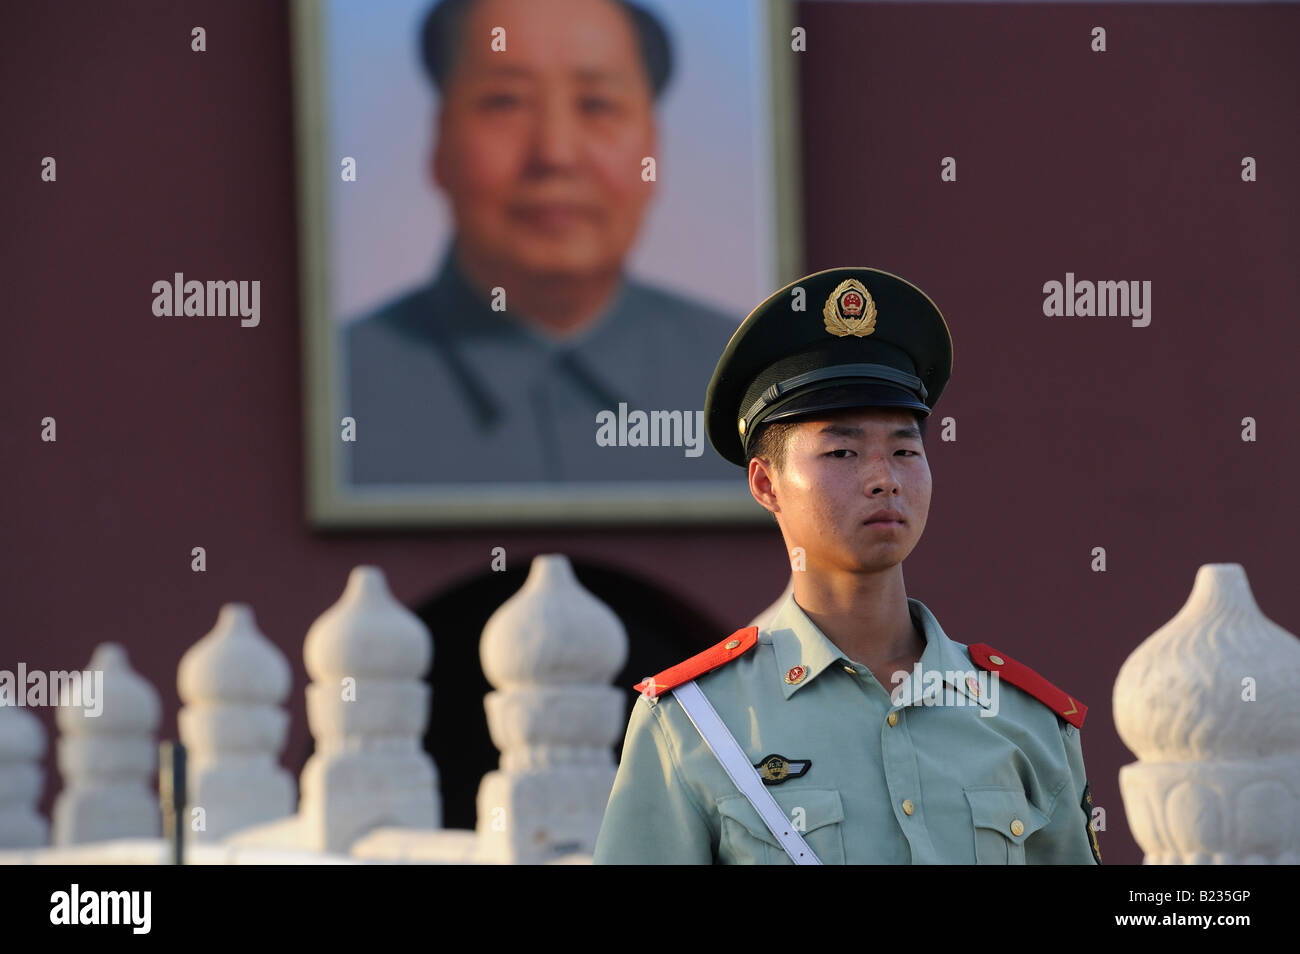 PLA soldat en garde à l'avant de la porte Tiananmen à Beijing, Chine. 12-JUIL-2008 Banque D'Images